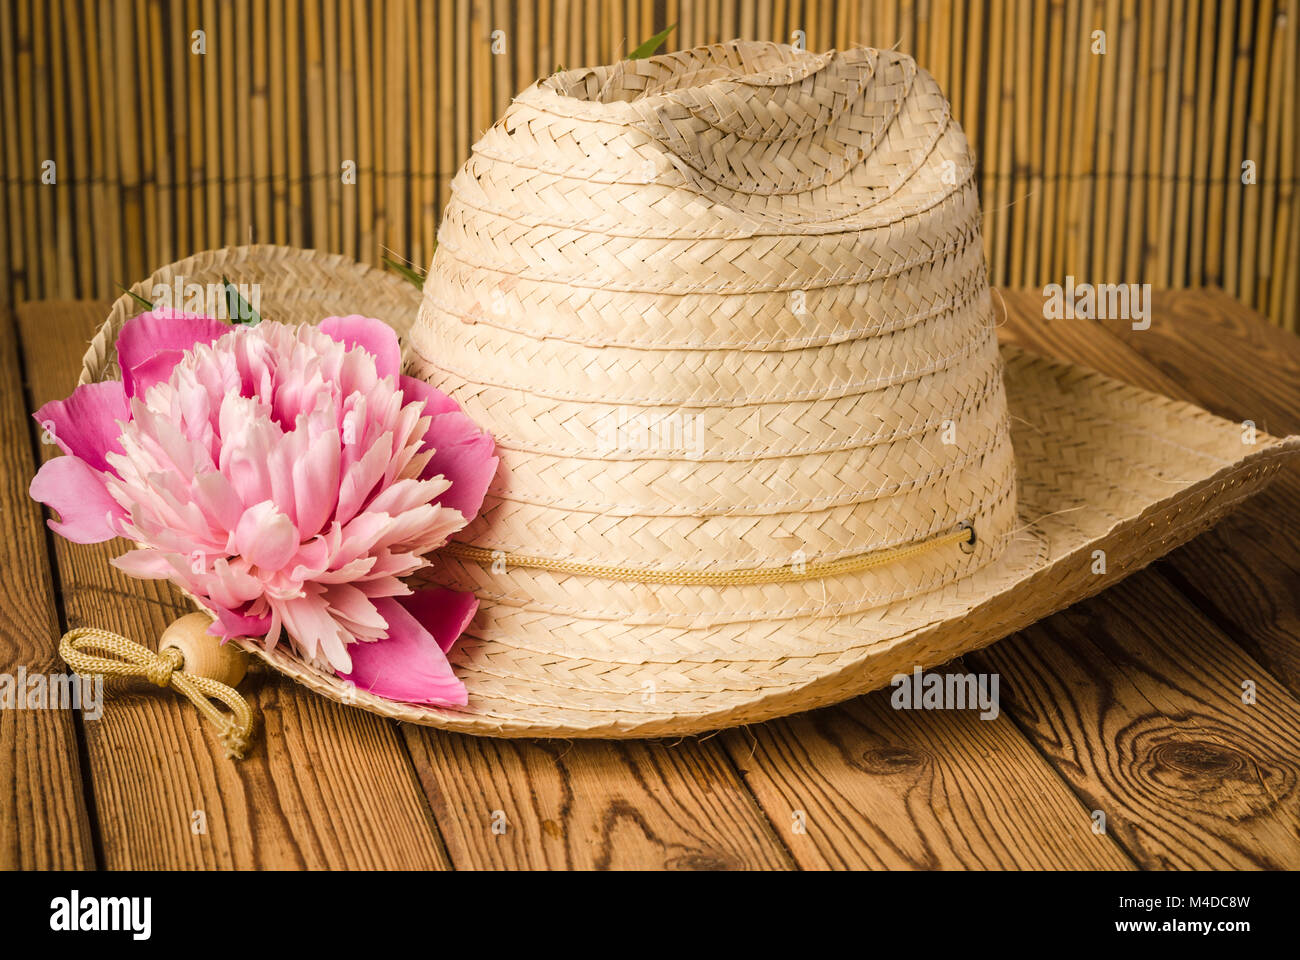 Sombrero de Paja y peonía, close-up Foto de stock